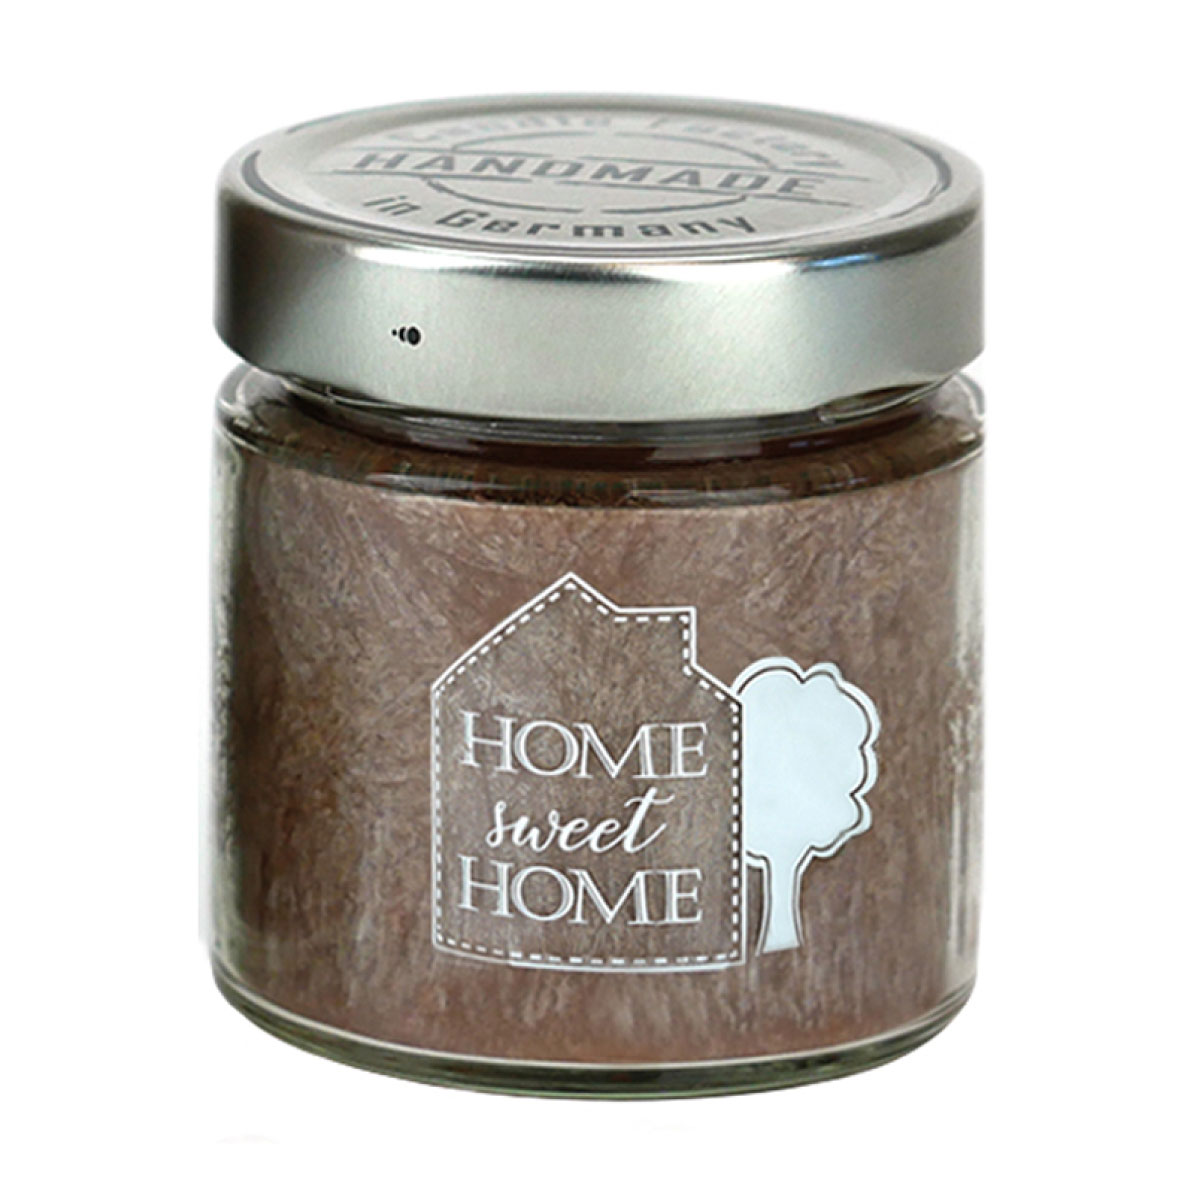 Home Sweet Home - Bedruckte Duftkerze von Candle Factory [klein]